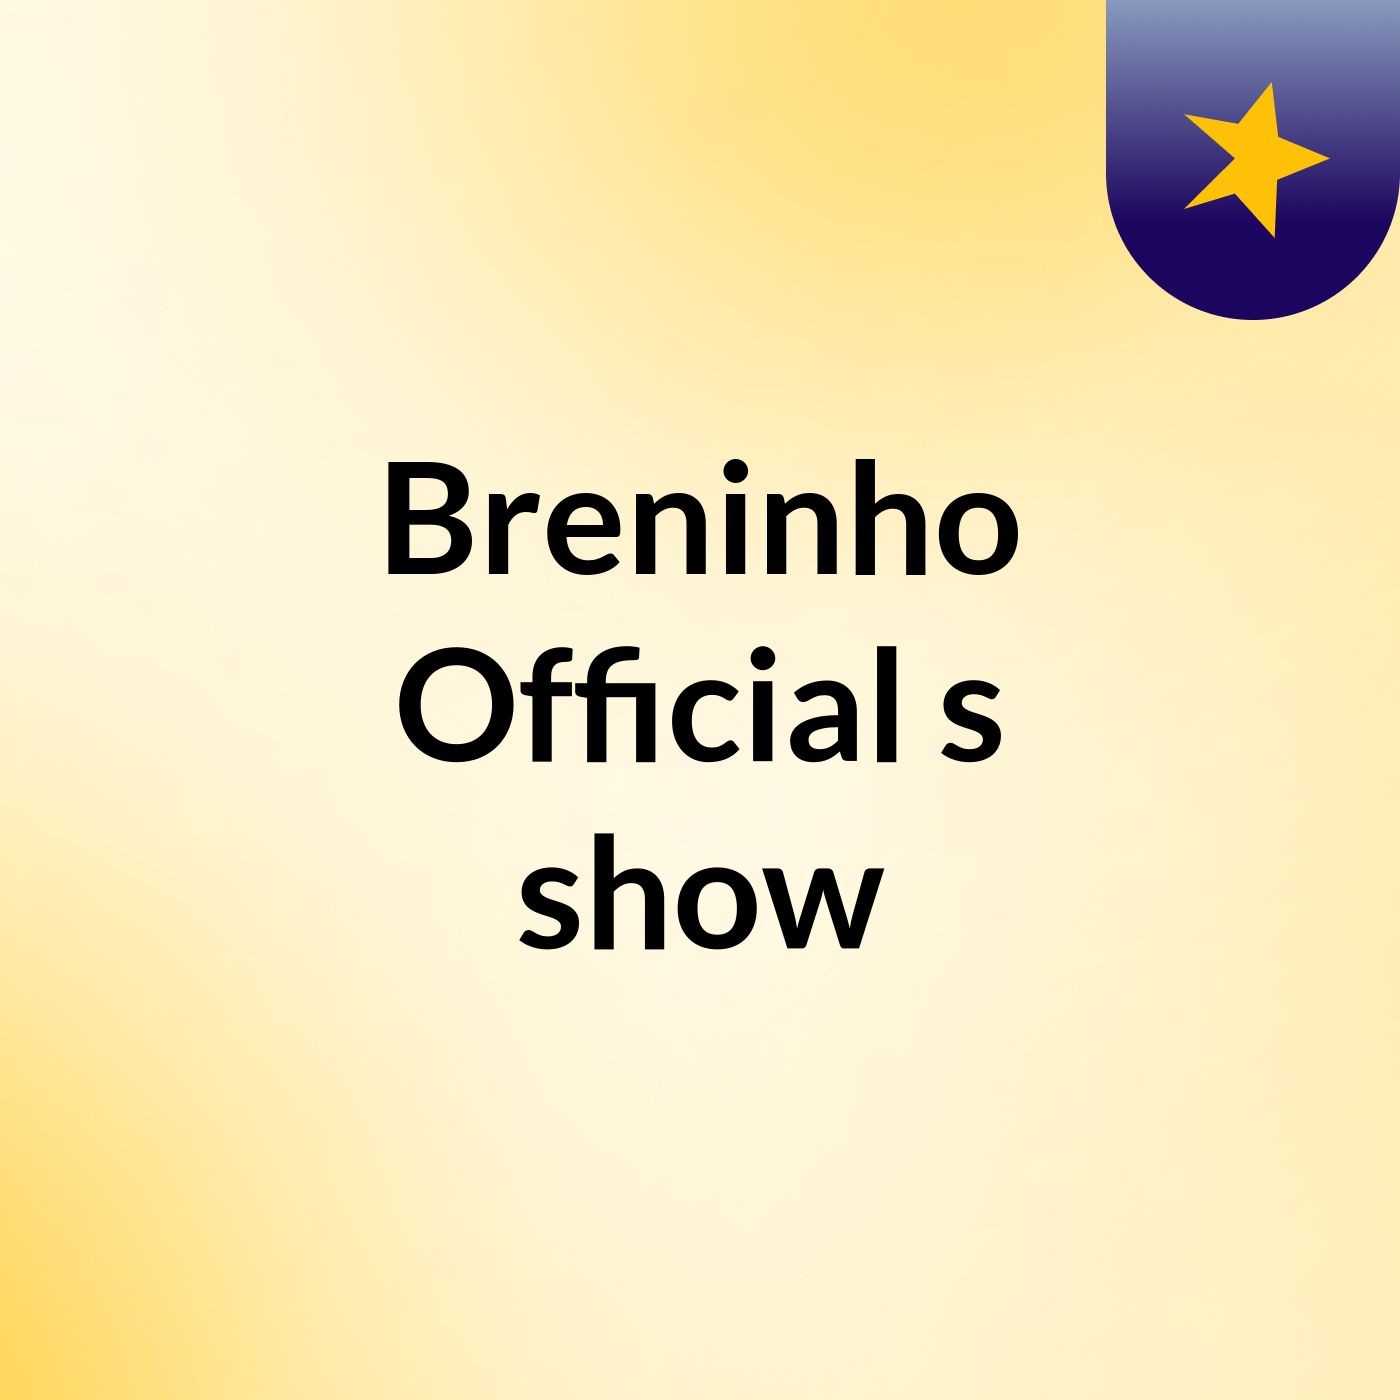 Episódio 10 - Breninho Official's show